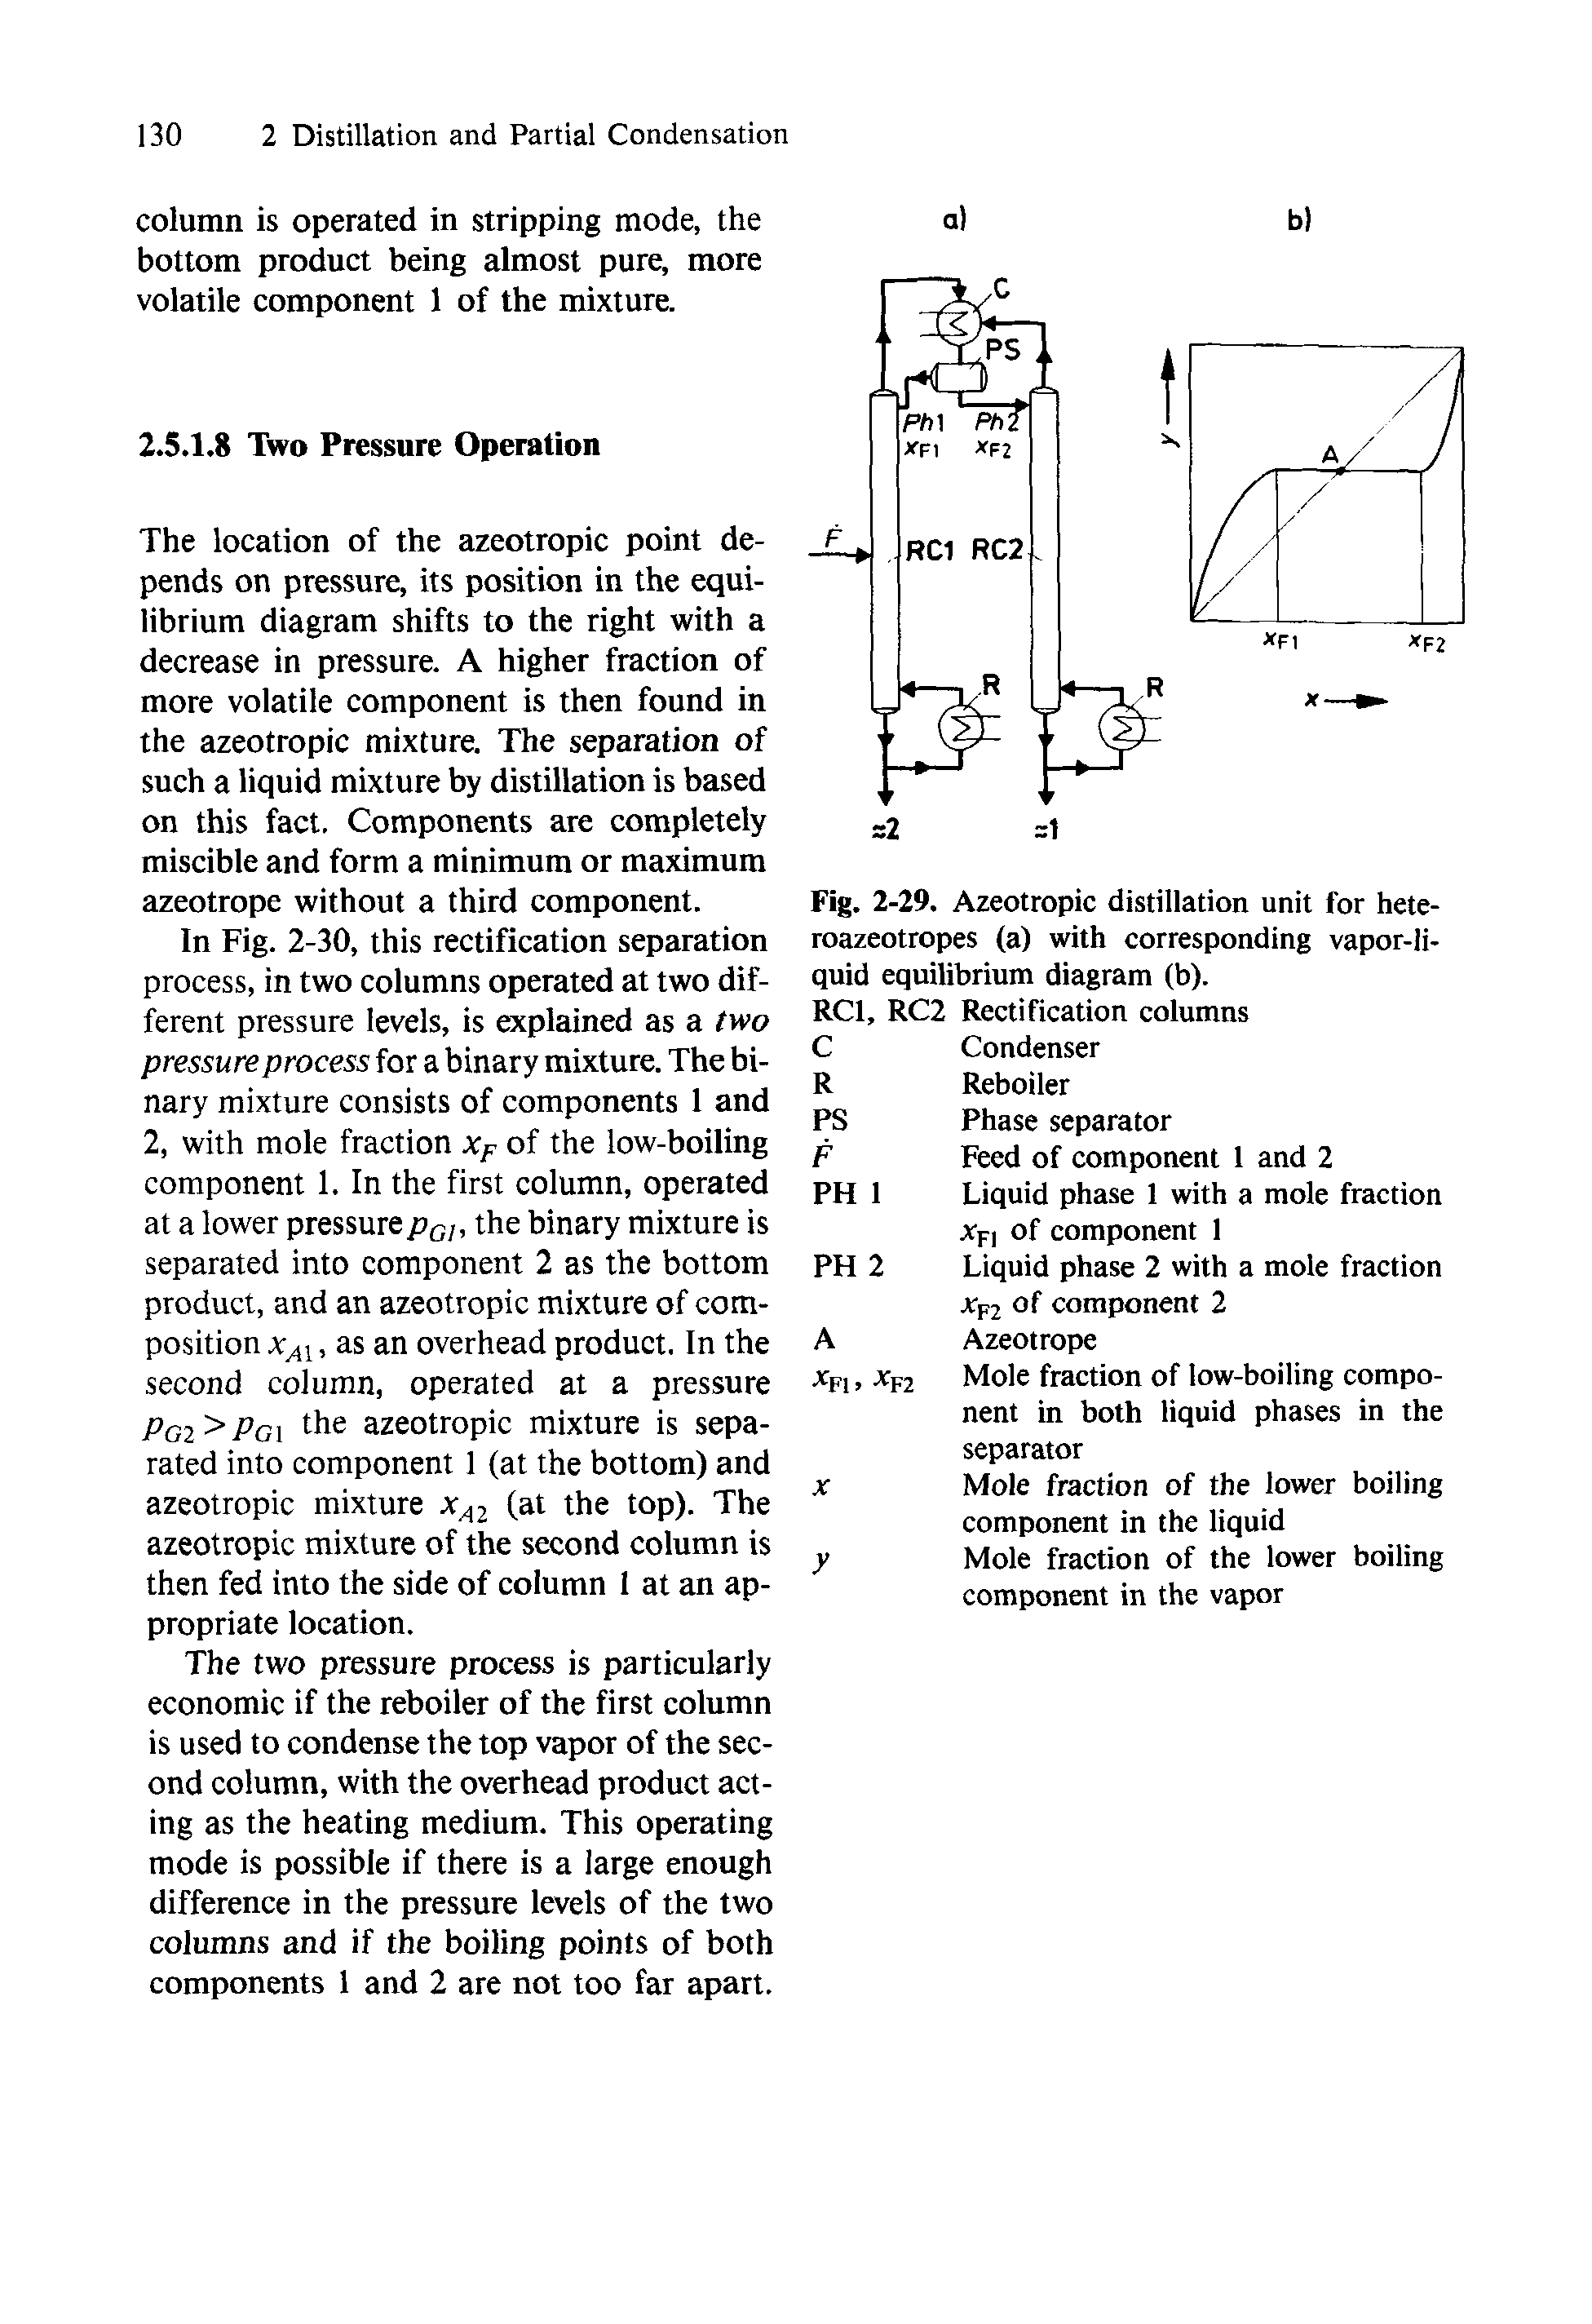 Fig. 2-29. Azeotropic distillation unit for heteroazeotropes (a) with corresponding vapor-liquid equilibrium diagram (b).